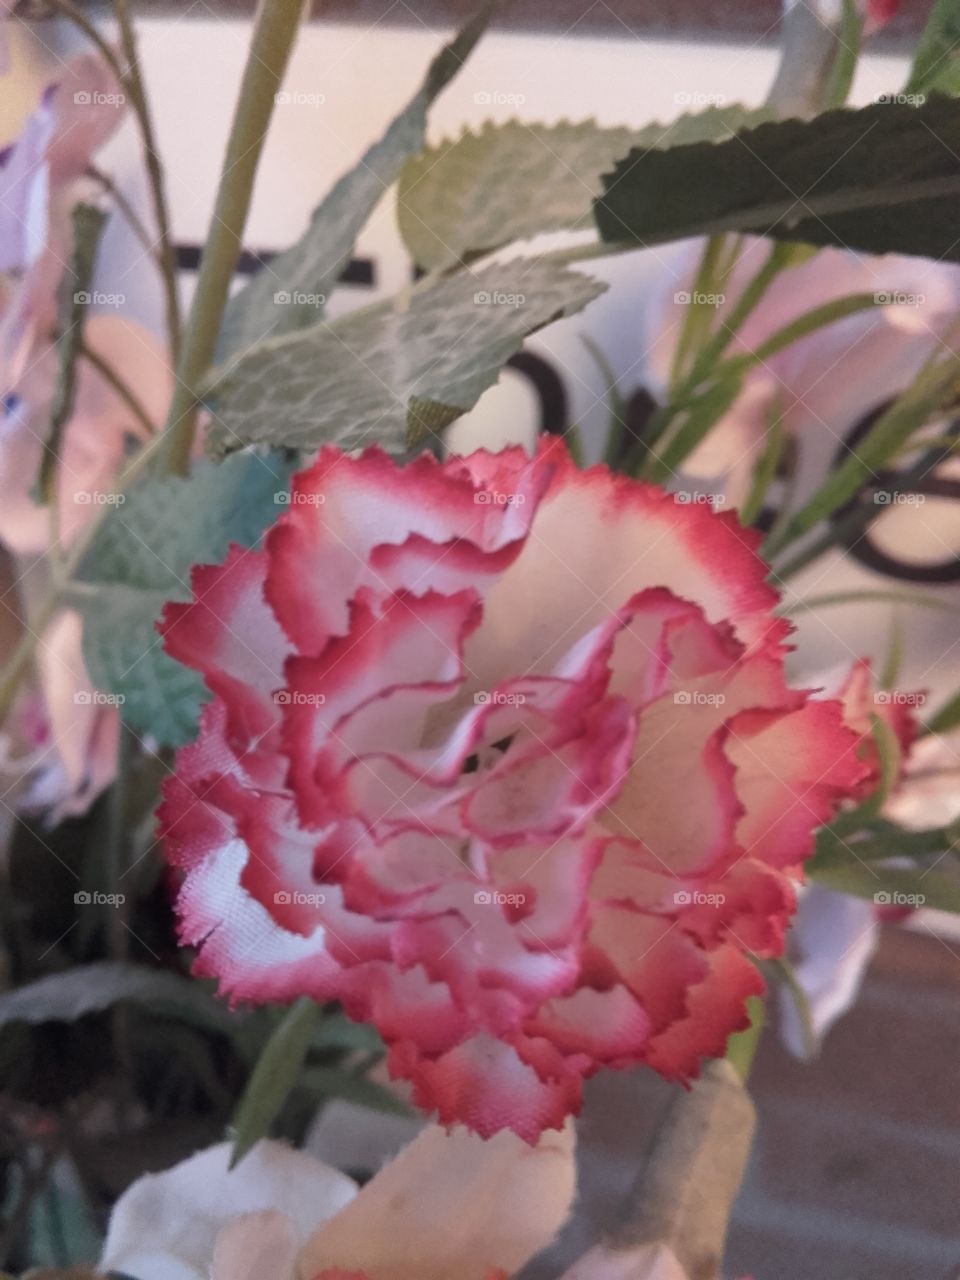 lovely rose